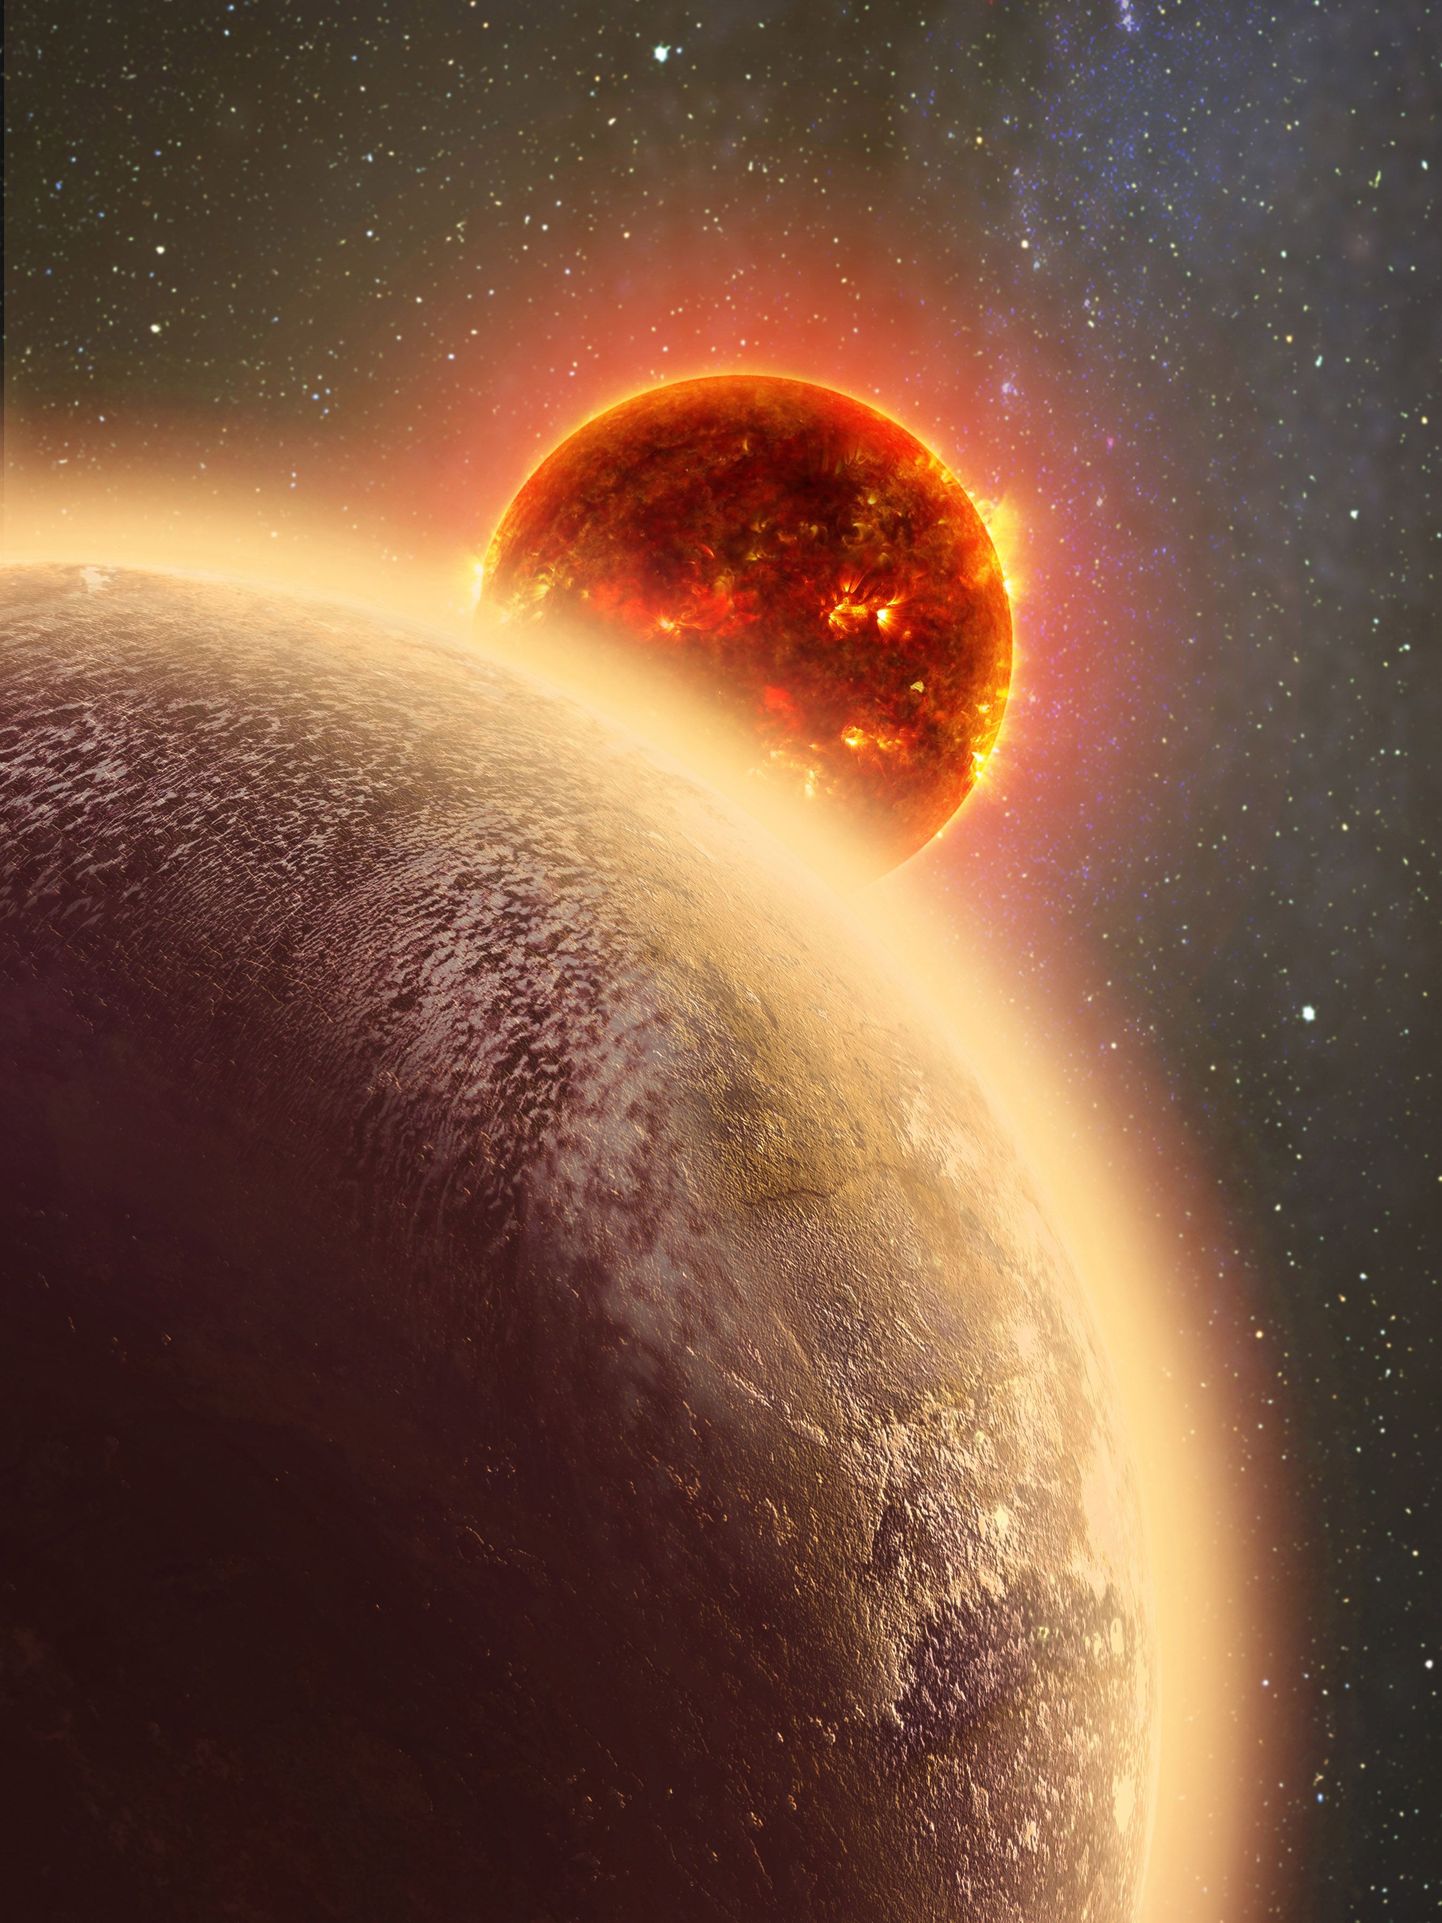 Kunstniku kujutis planeedist GJ 1132 b, mida peetakse nüüd esimeseks teadaolevaks paksu atmosfääriga eksoplaneediks.